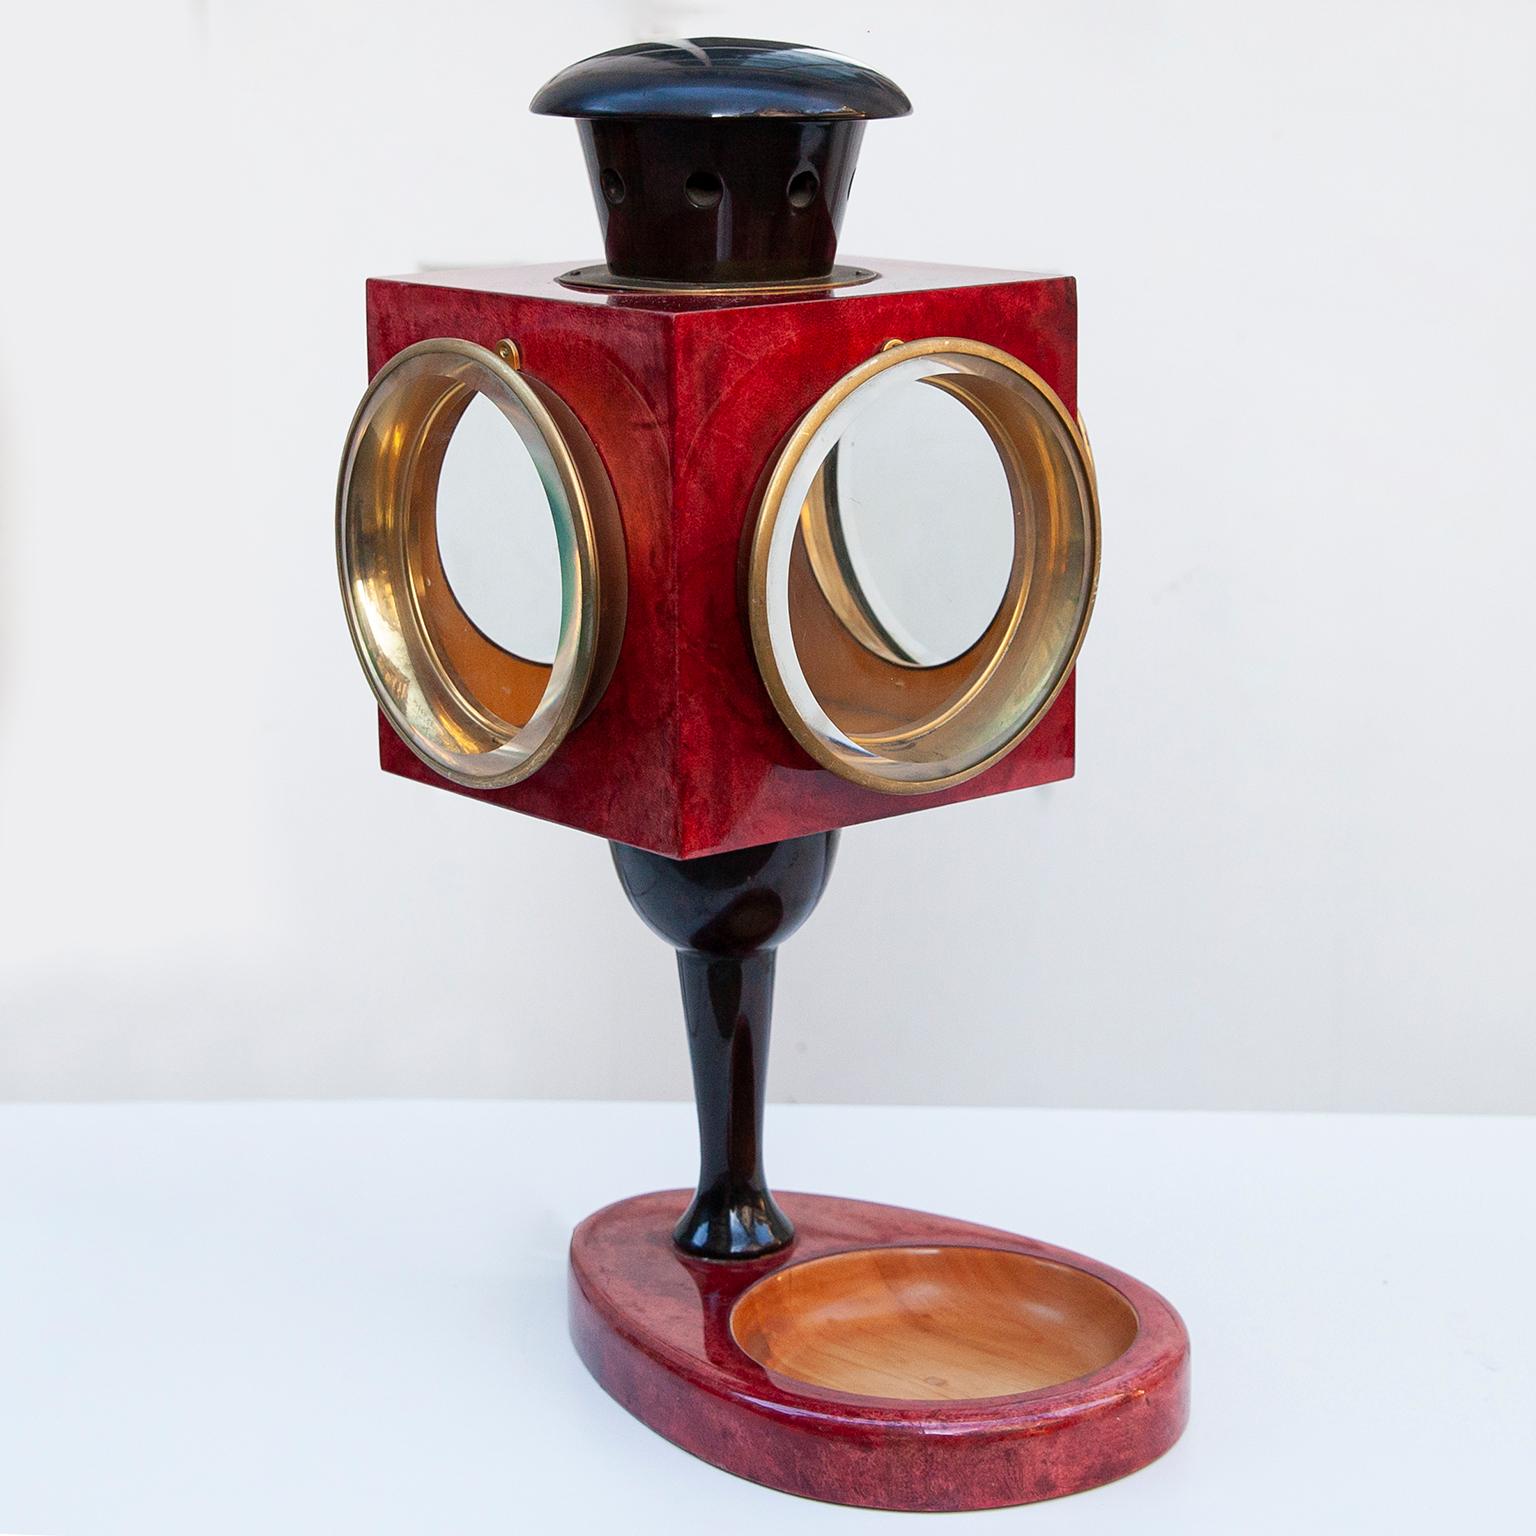 Hervorragende Laternen-Tischlampe von Aldo Tura, Italien, aus den 1960er Jahren.

Die Lampe wurde aus lackiertem rotem Ziegenleder mit Messingringen gefertigt und enthält eine kleine Schale. Sie ist in sehr gutem Zustand.

Zusammen mit Künstlern